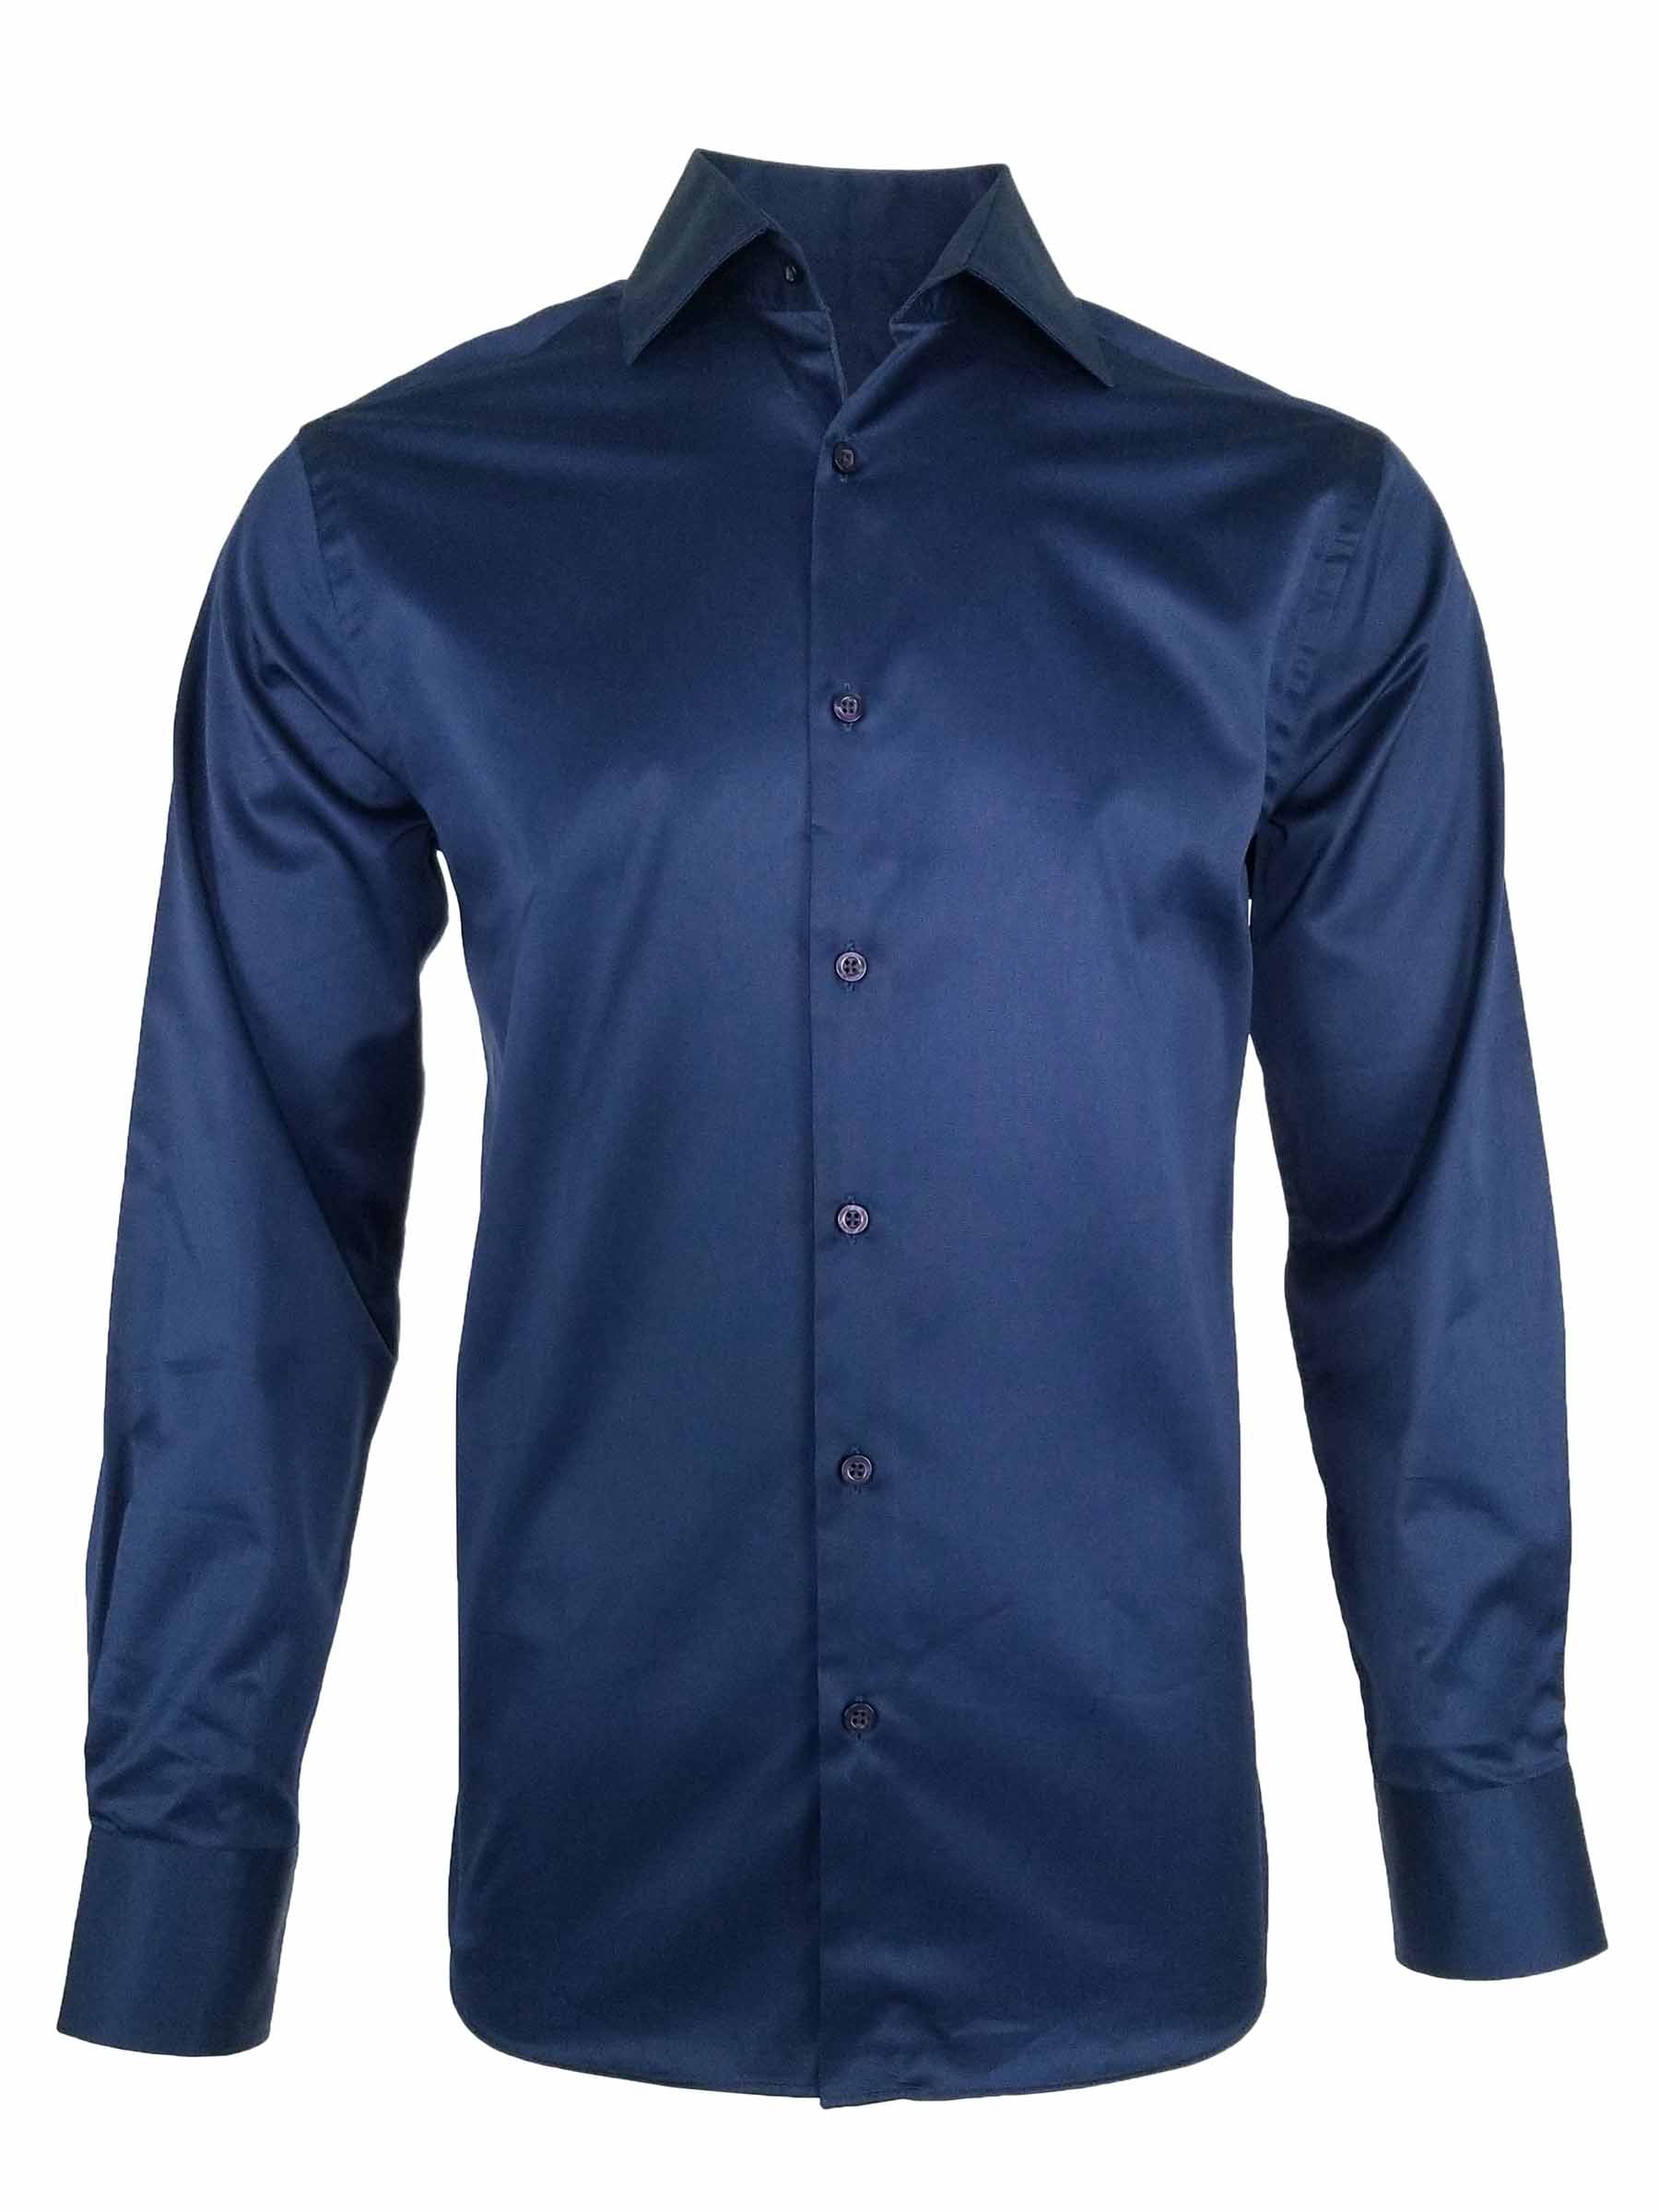 Men's Sateen Shirt - Navy Long Sleeve - Uniform Edit